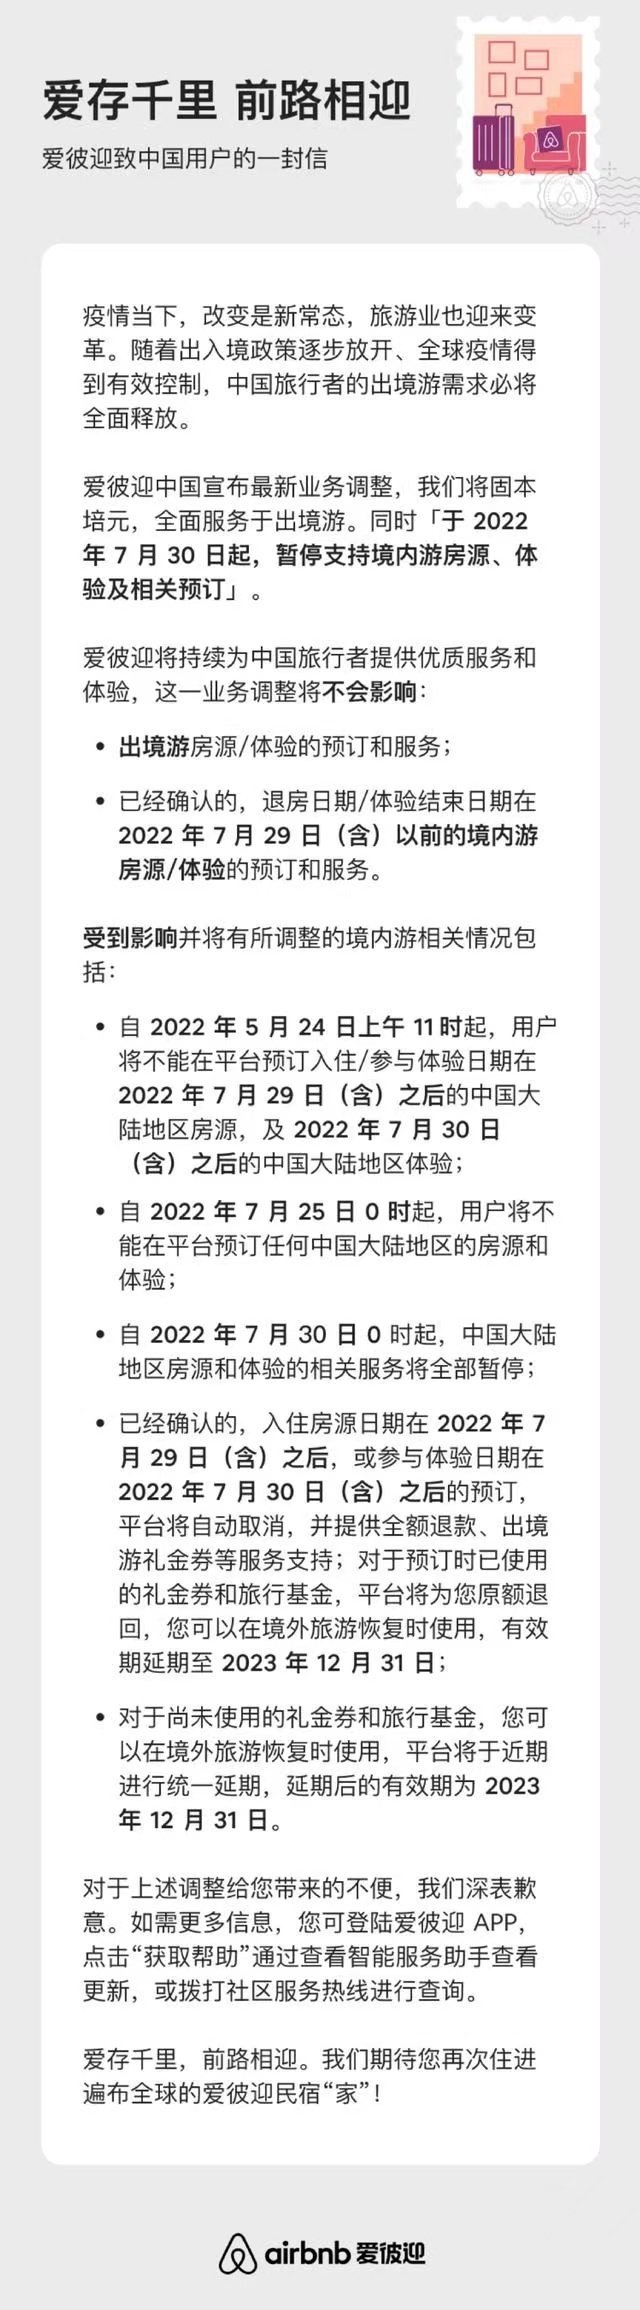 爱彼迎中国宣布最新业务调整：将暂停支持境内游房源、体验及相关预订